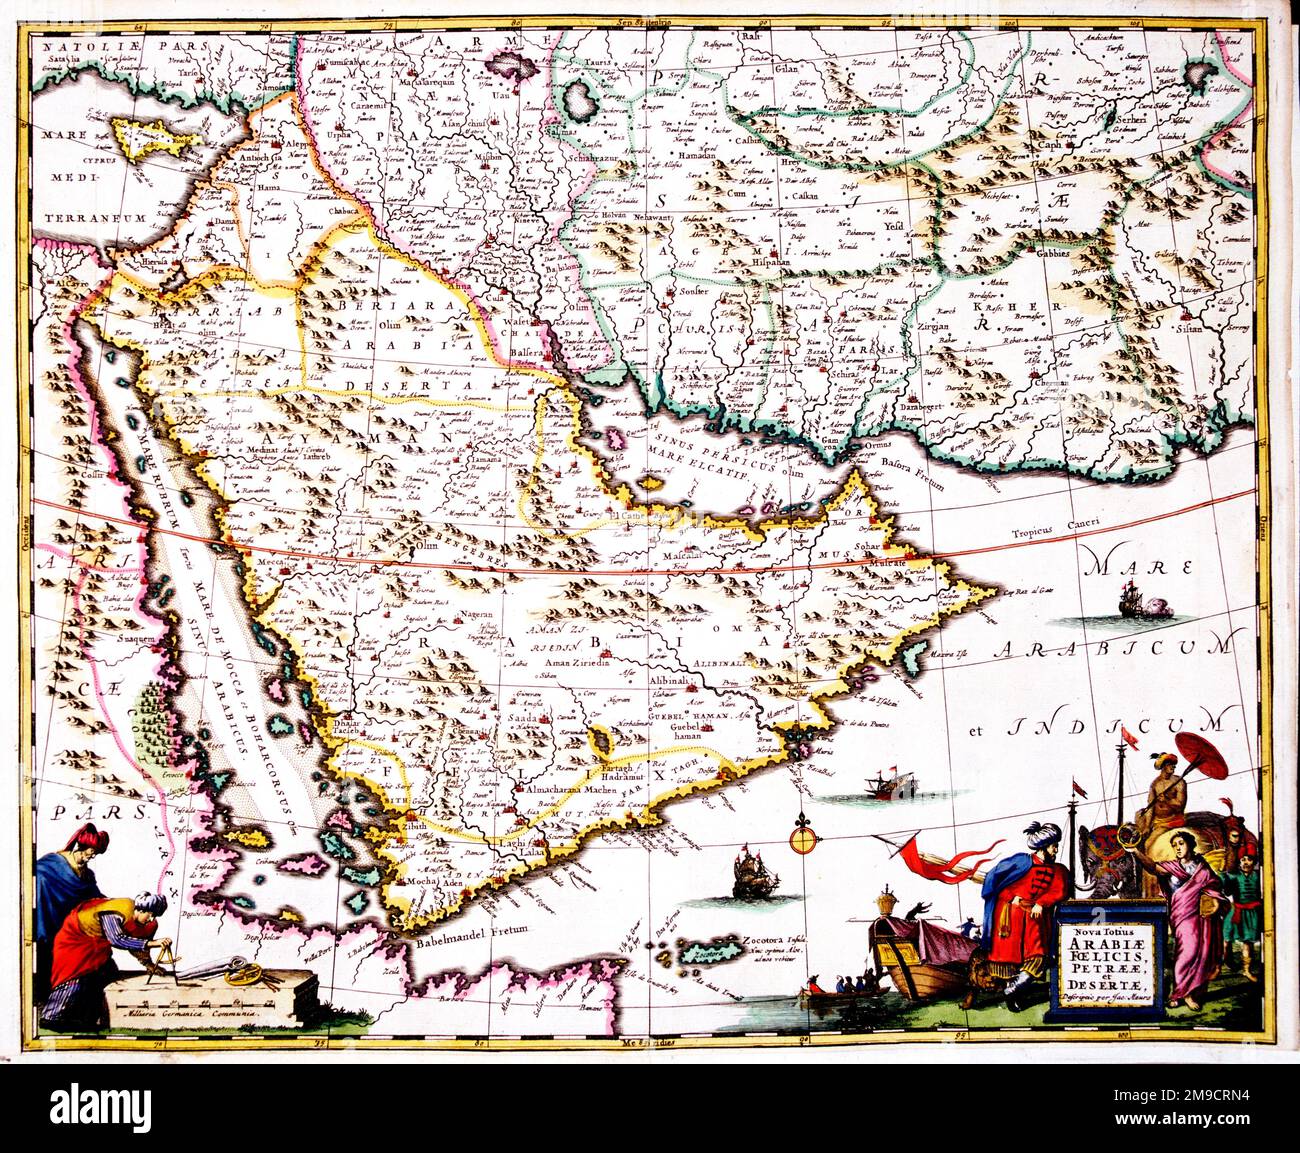 Nova Totius Arabiae Foelices, Petrae, et Desertae - 17th century Map of Arabia, Israel, Persia and Armenia Stock Photo